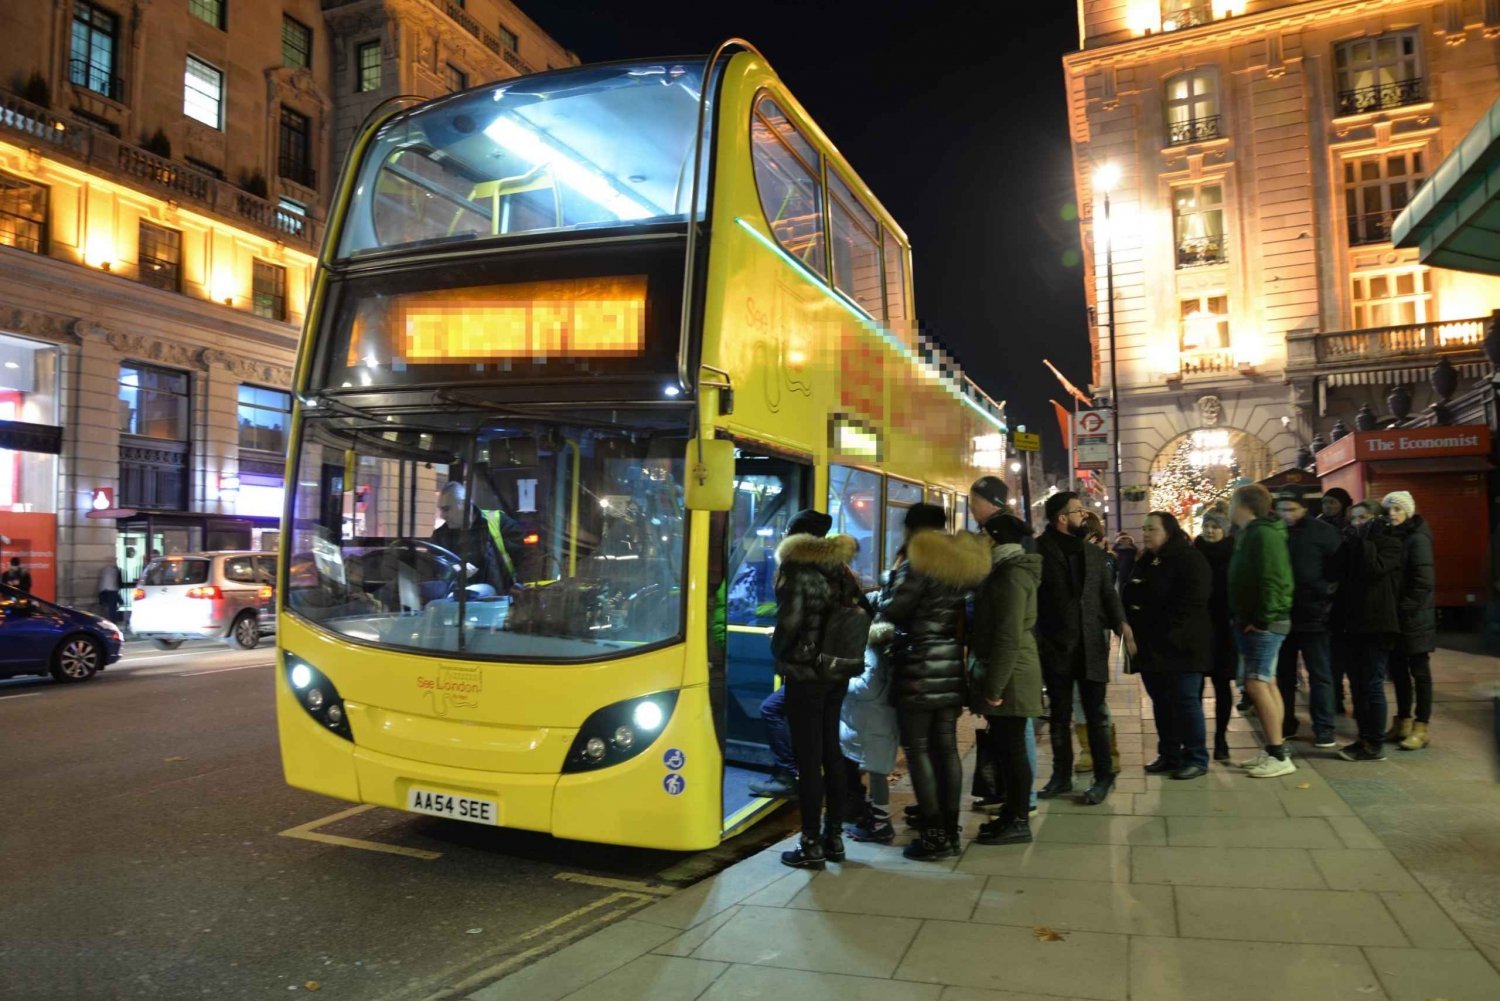 Londra: Tour privato in autobus scoperto